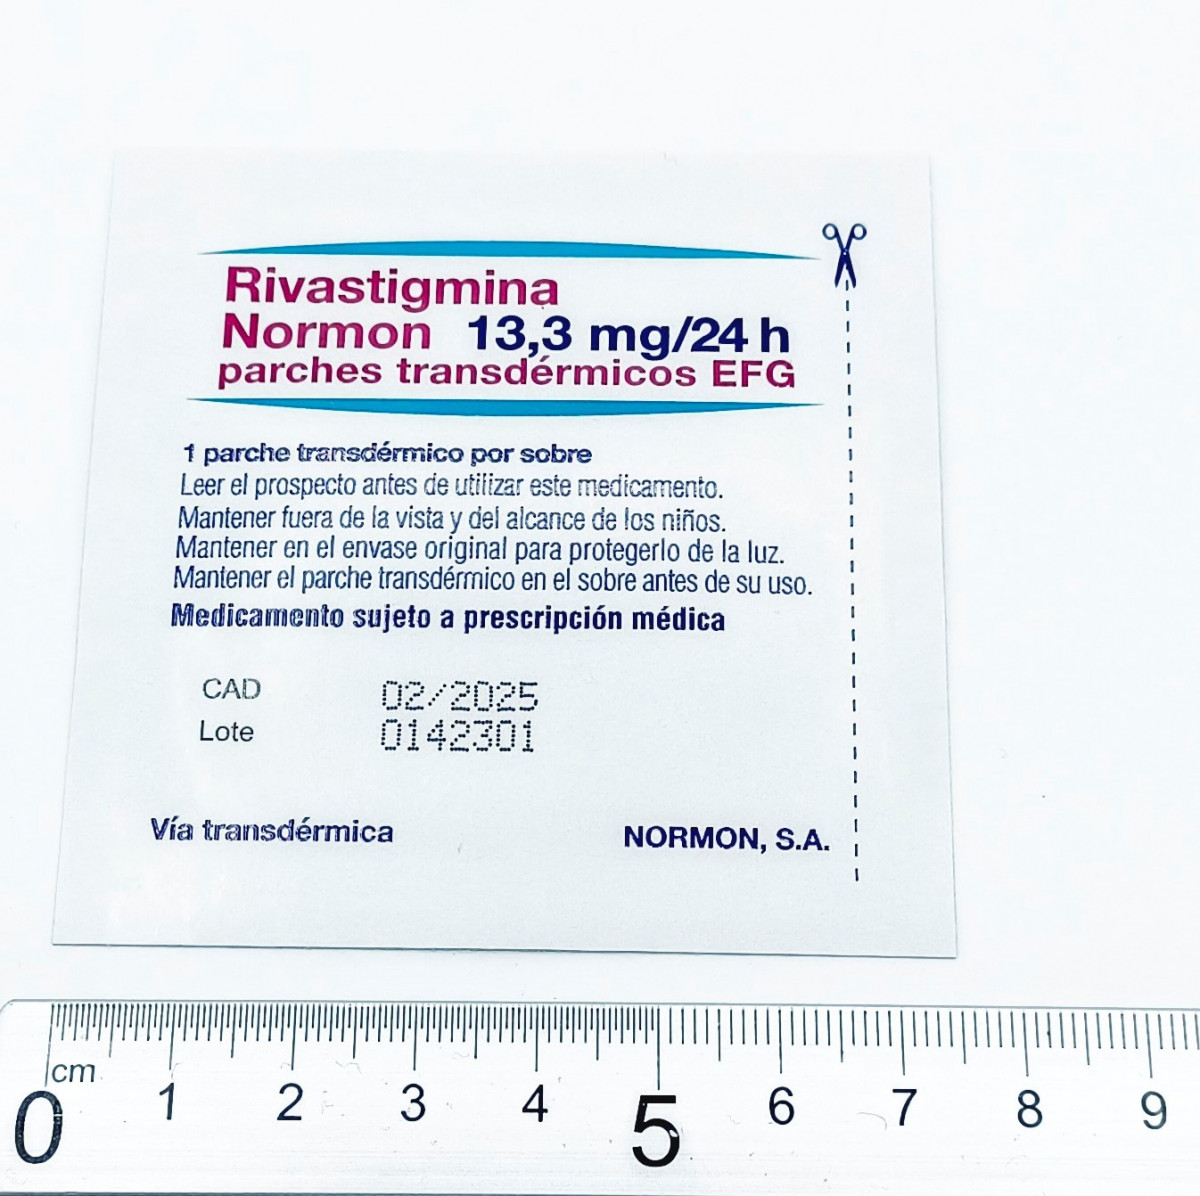 RIVASTIGMINA NORMON 13,3 MG/24 H PARCHES TRANSDERMICOS EFG, 60 parches transdérmicos fotografía de la forma farmacéutica.